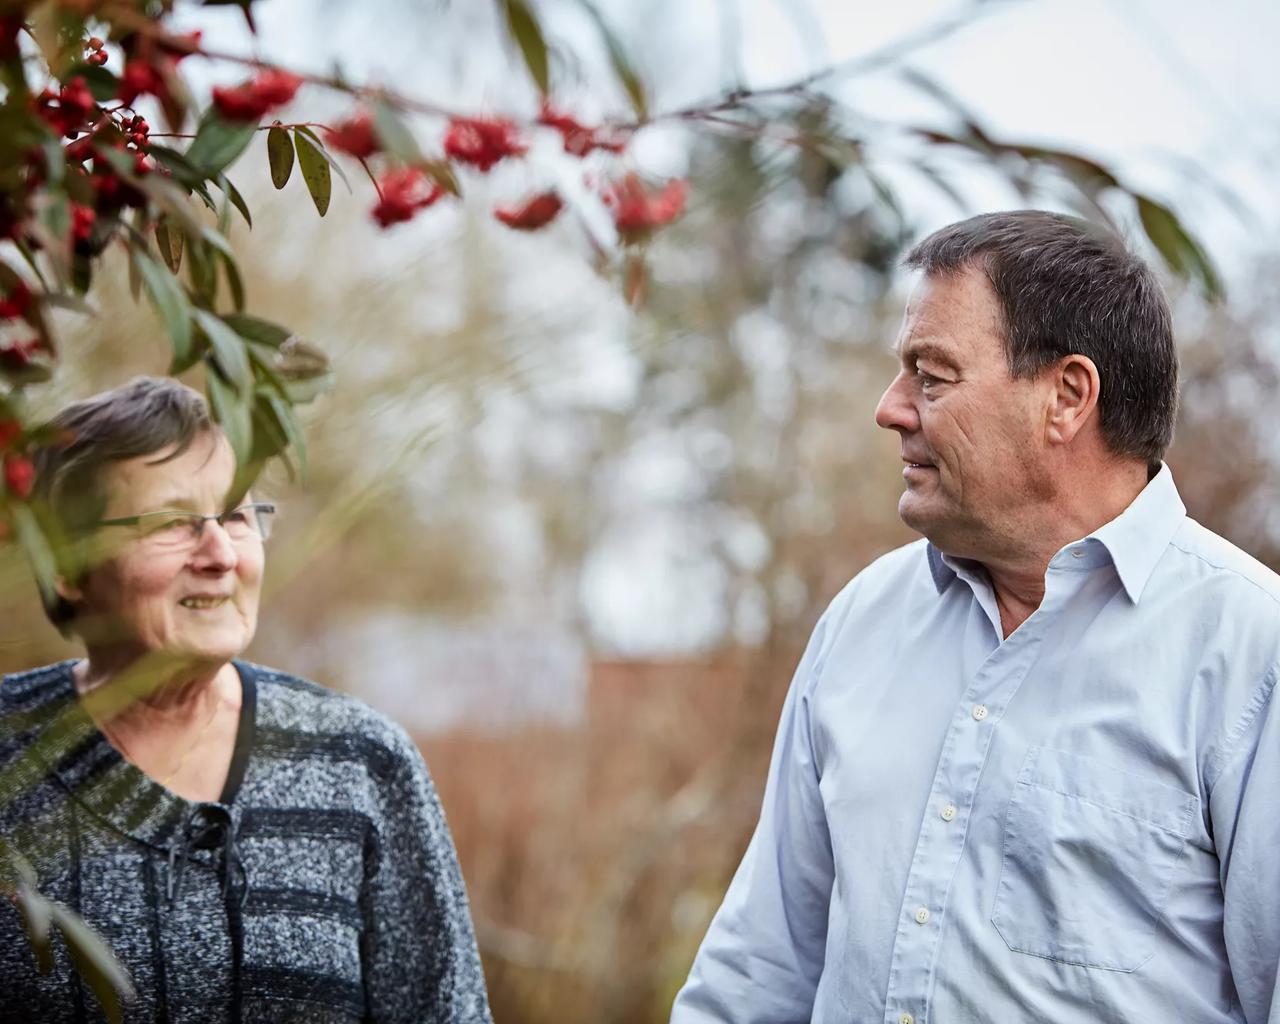 Ældre ægtepar taler sammen ude i en have